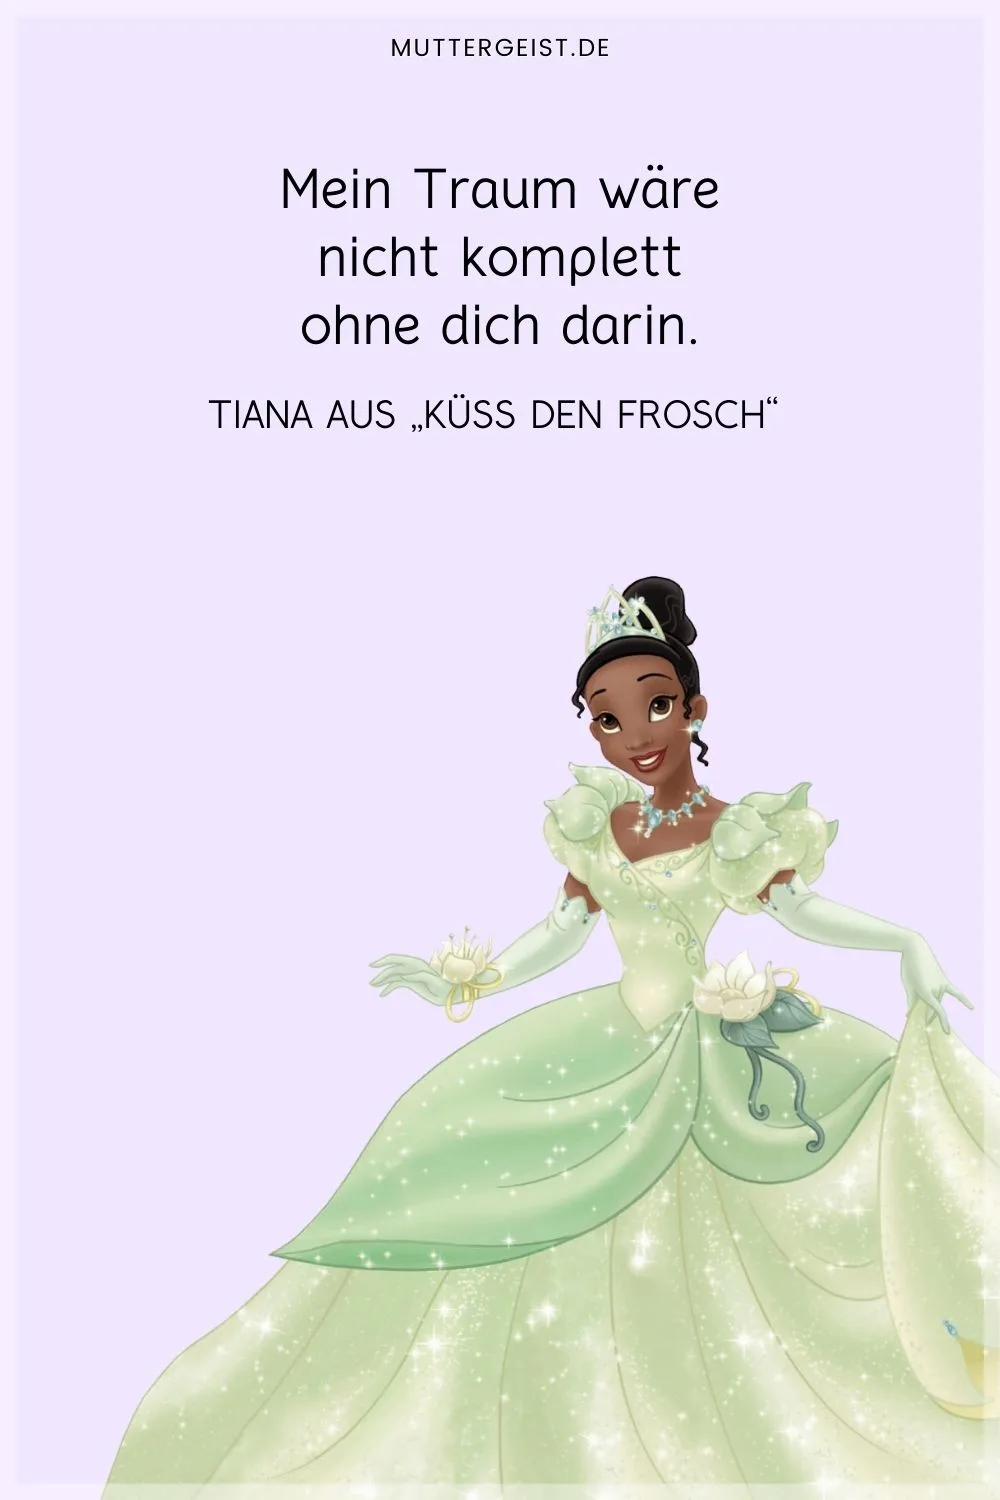 Tianas Zitat aus Disneys Film Die Prinzessin und der Frosch